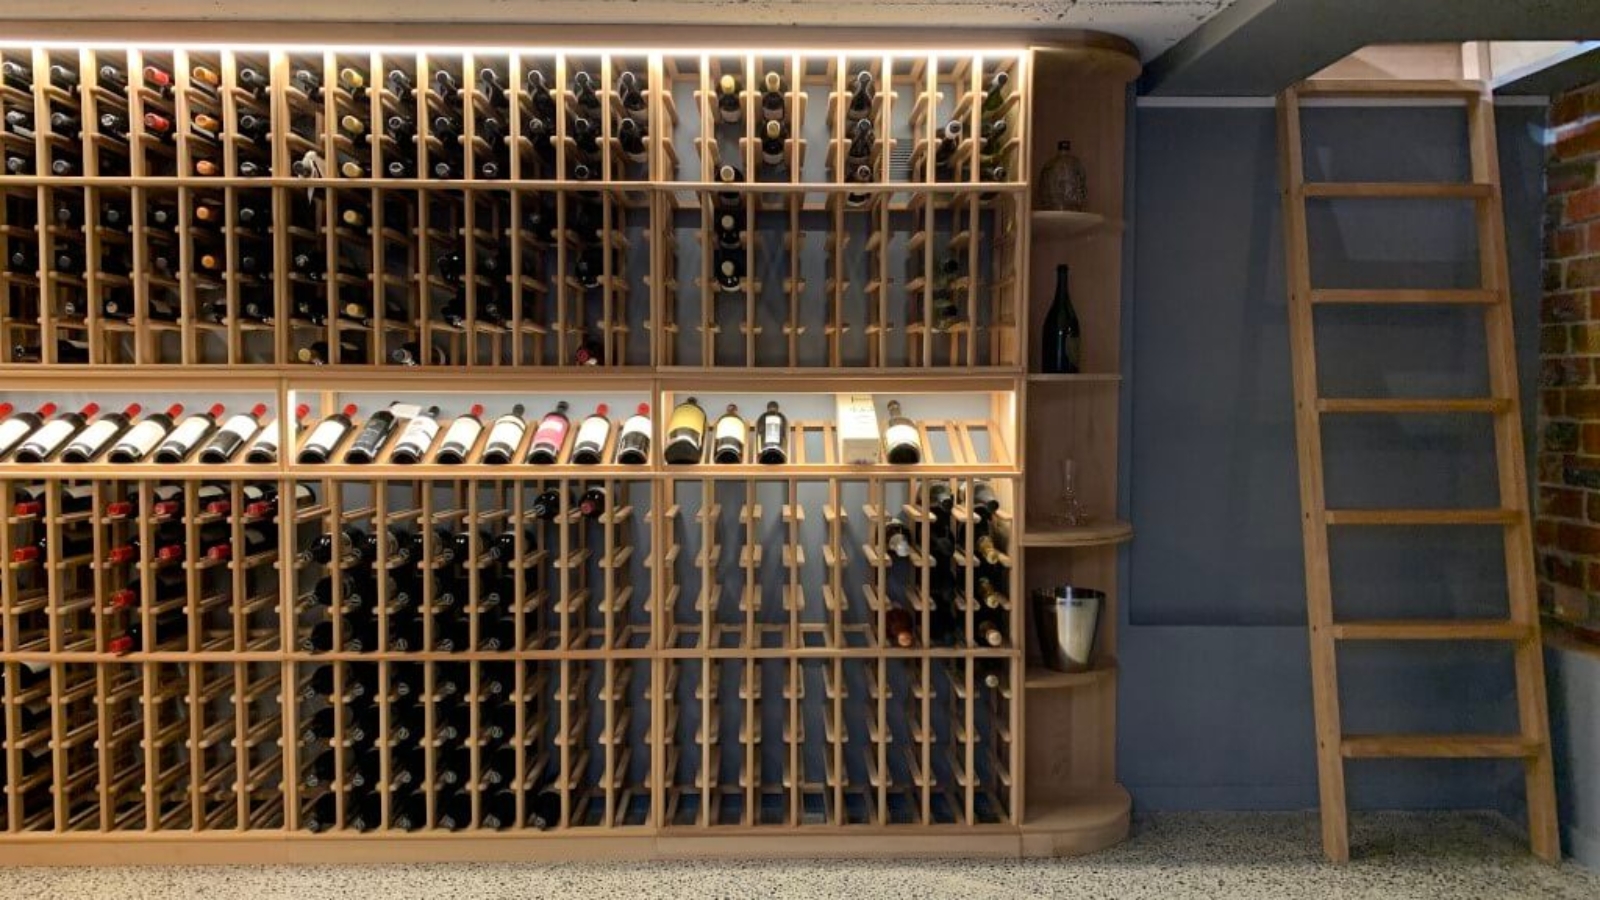 Kew Wine Cellar Project-3